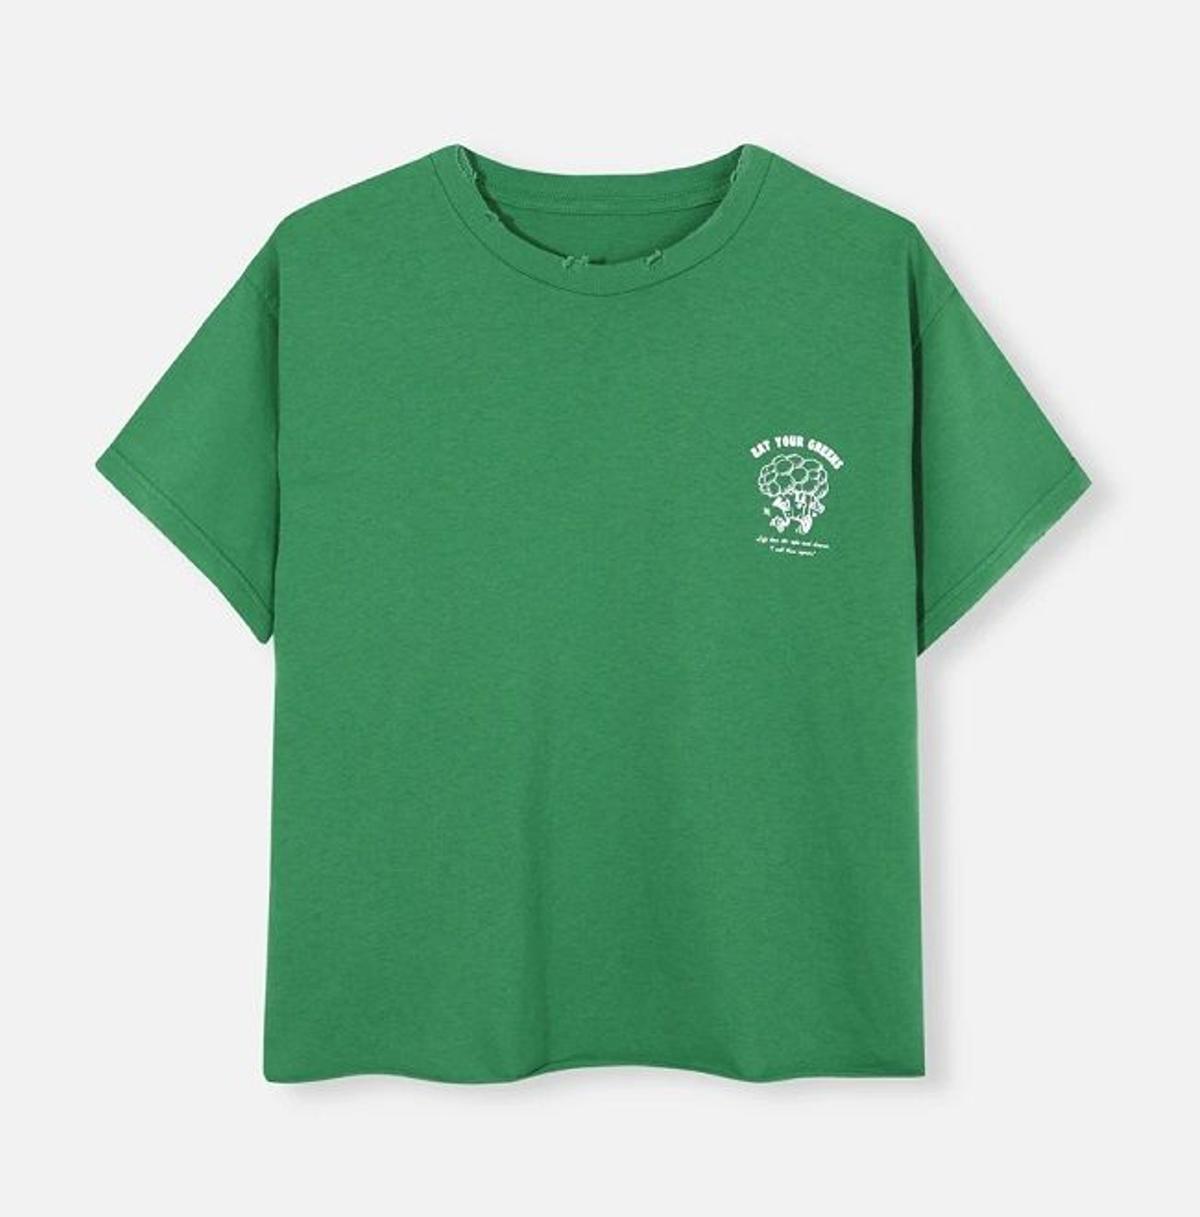 Camiseta de manga corta en color verde con 'print' brócoli, de My Peeptoes